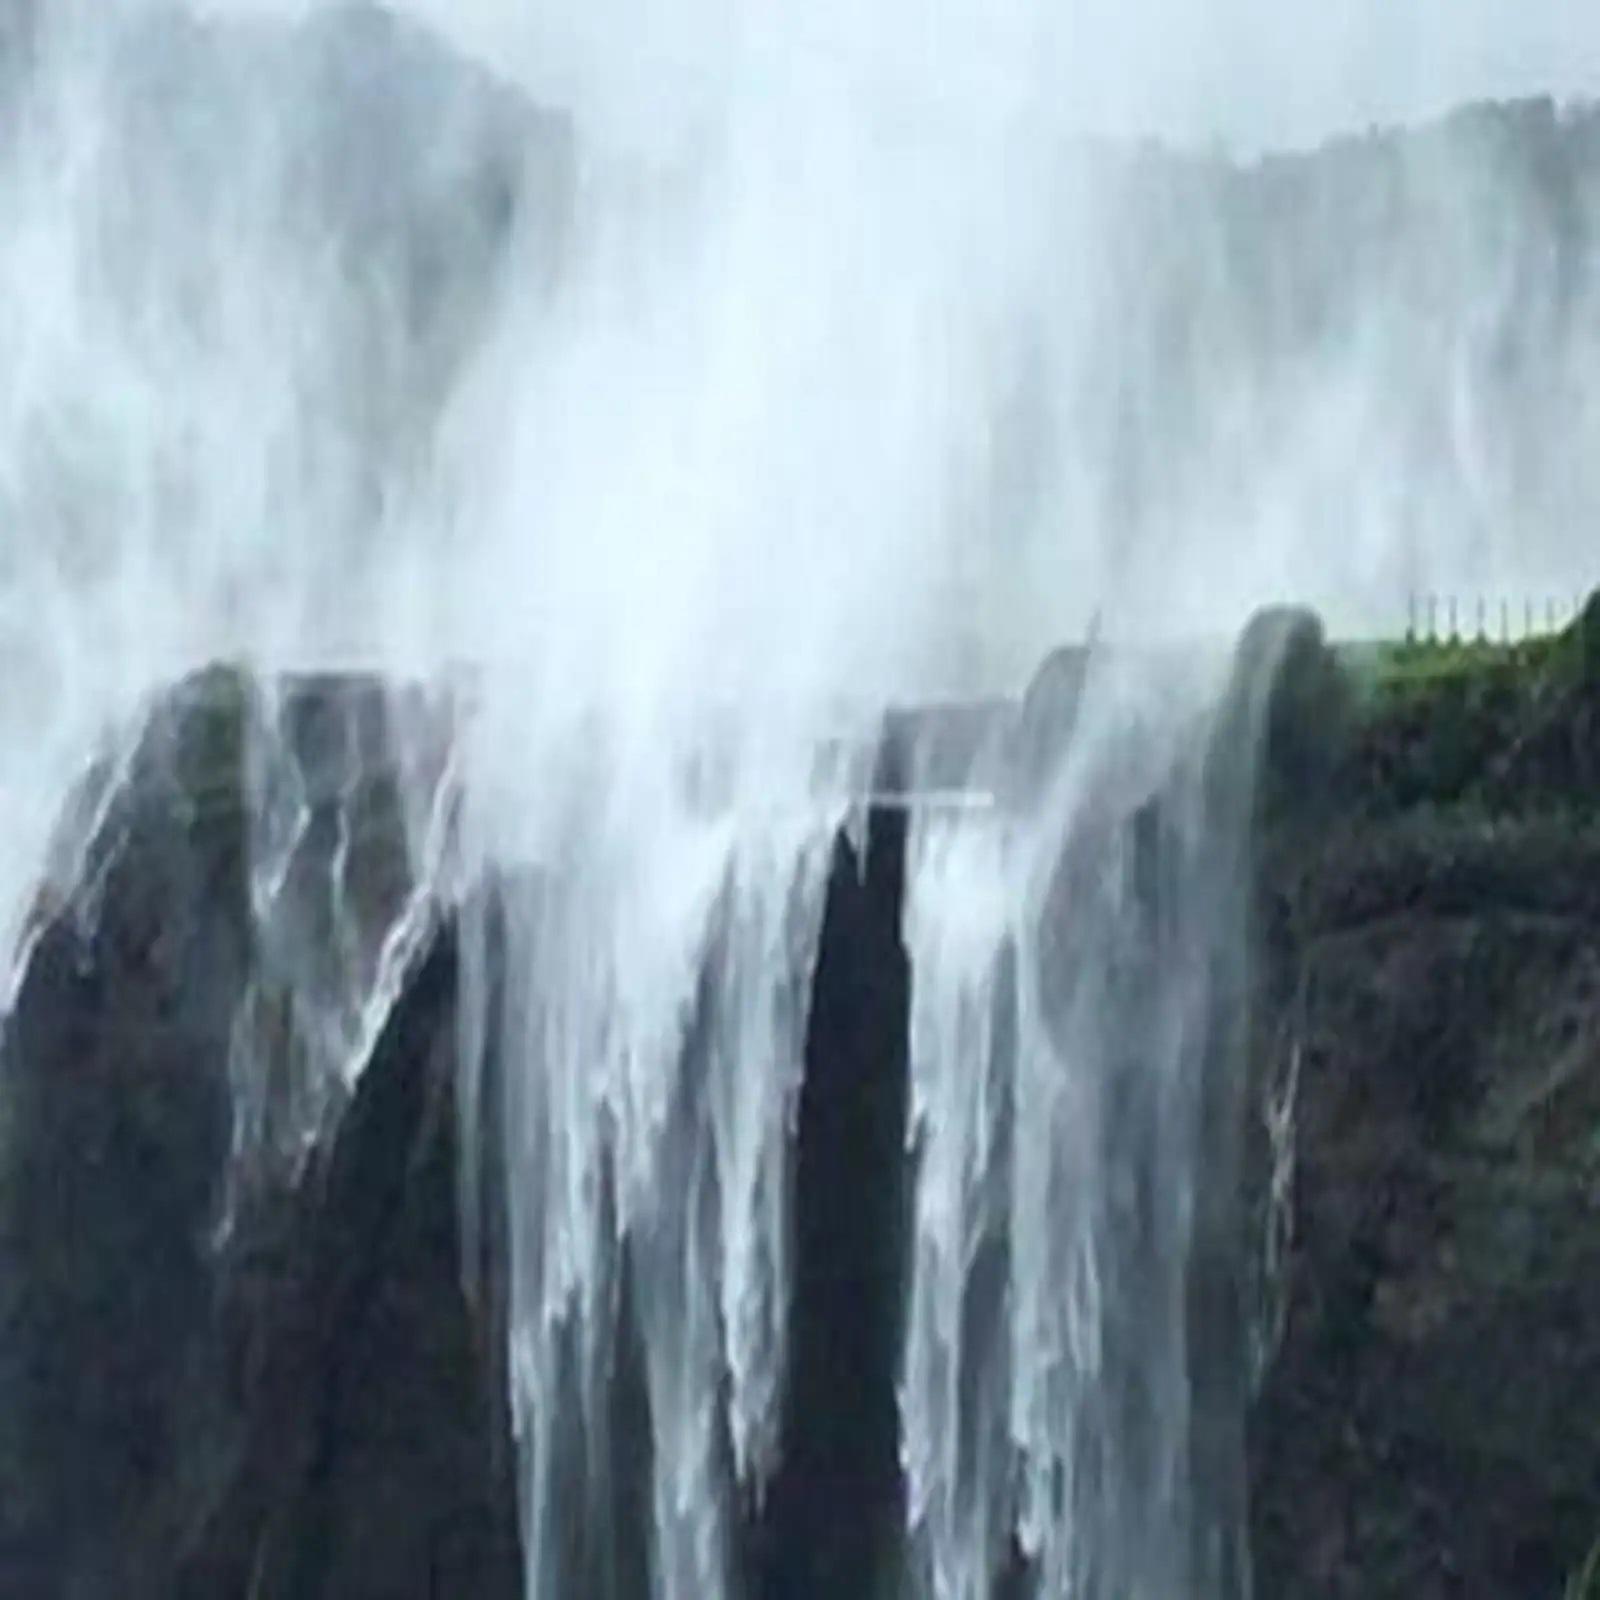 महाराष्ट्र में यहां है रहस्यमयी Reverse Waterfall, जहां पानी जाता है नीचे से ऊपर की ओर, एक बार जरूर देखं ये अद्धभूत नजारा